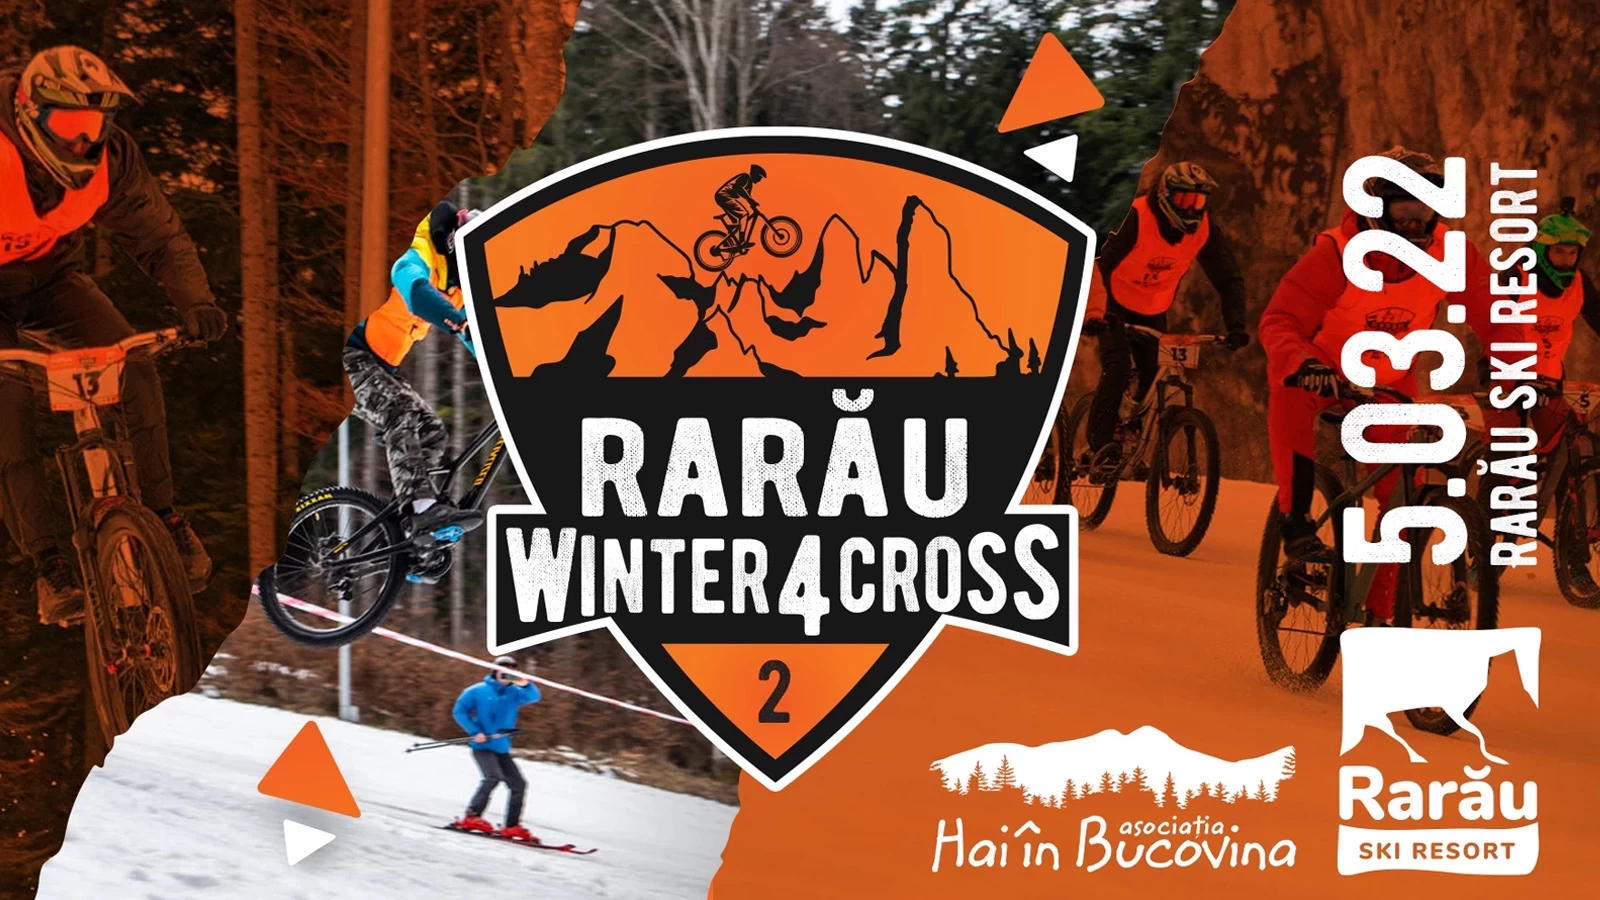 Rarau MTB Winter 4 Cross 2022